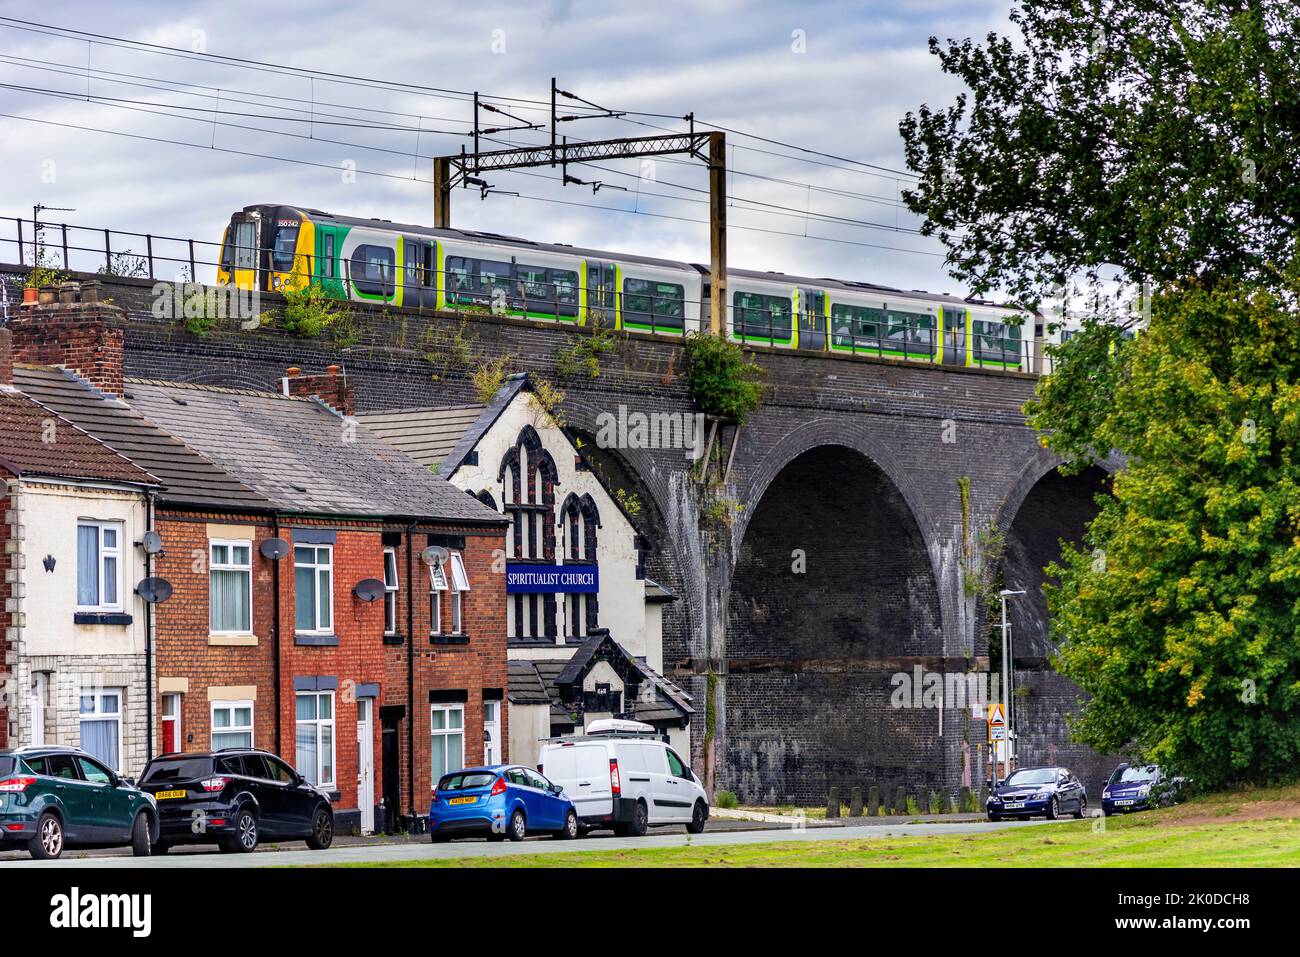 Der elektrische Mehrzugzug der Klasse 350 fährt in Richtung Liverpool und überquert Häuser unter Brückenbögen. Stockfoto